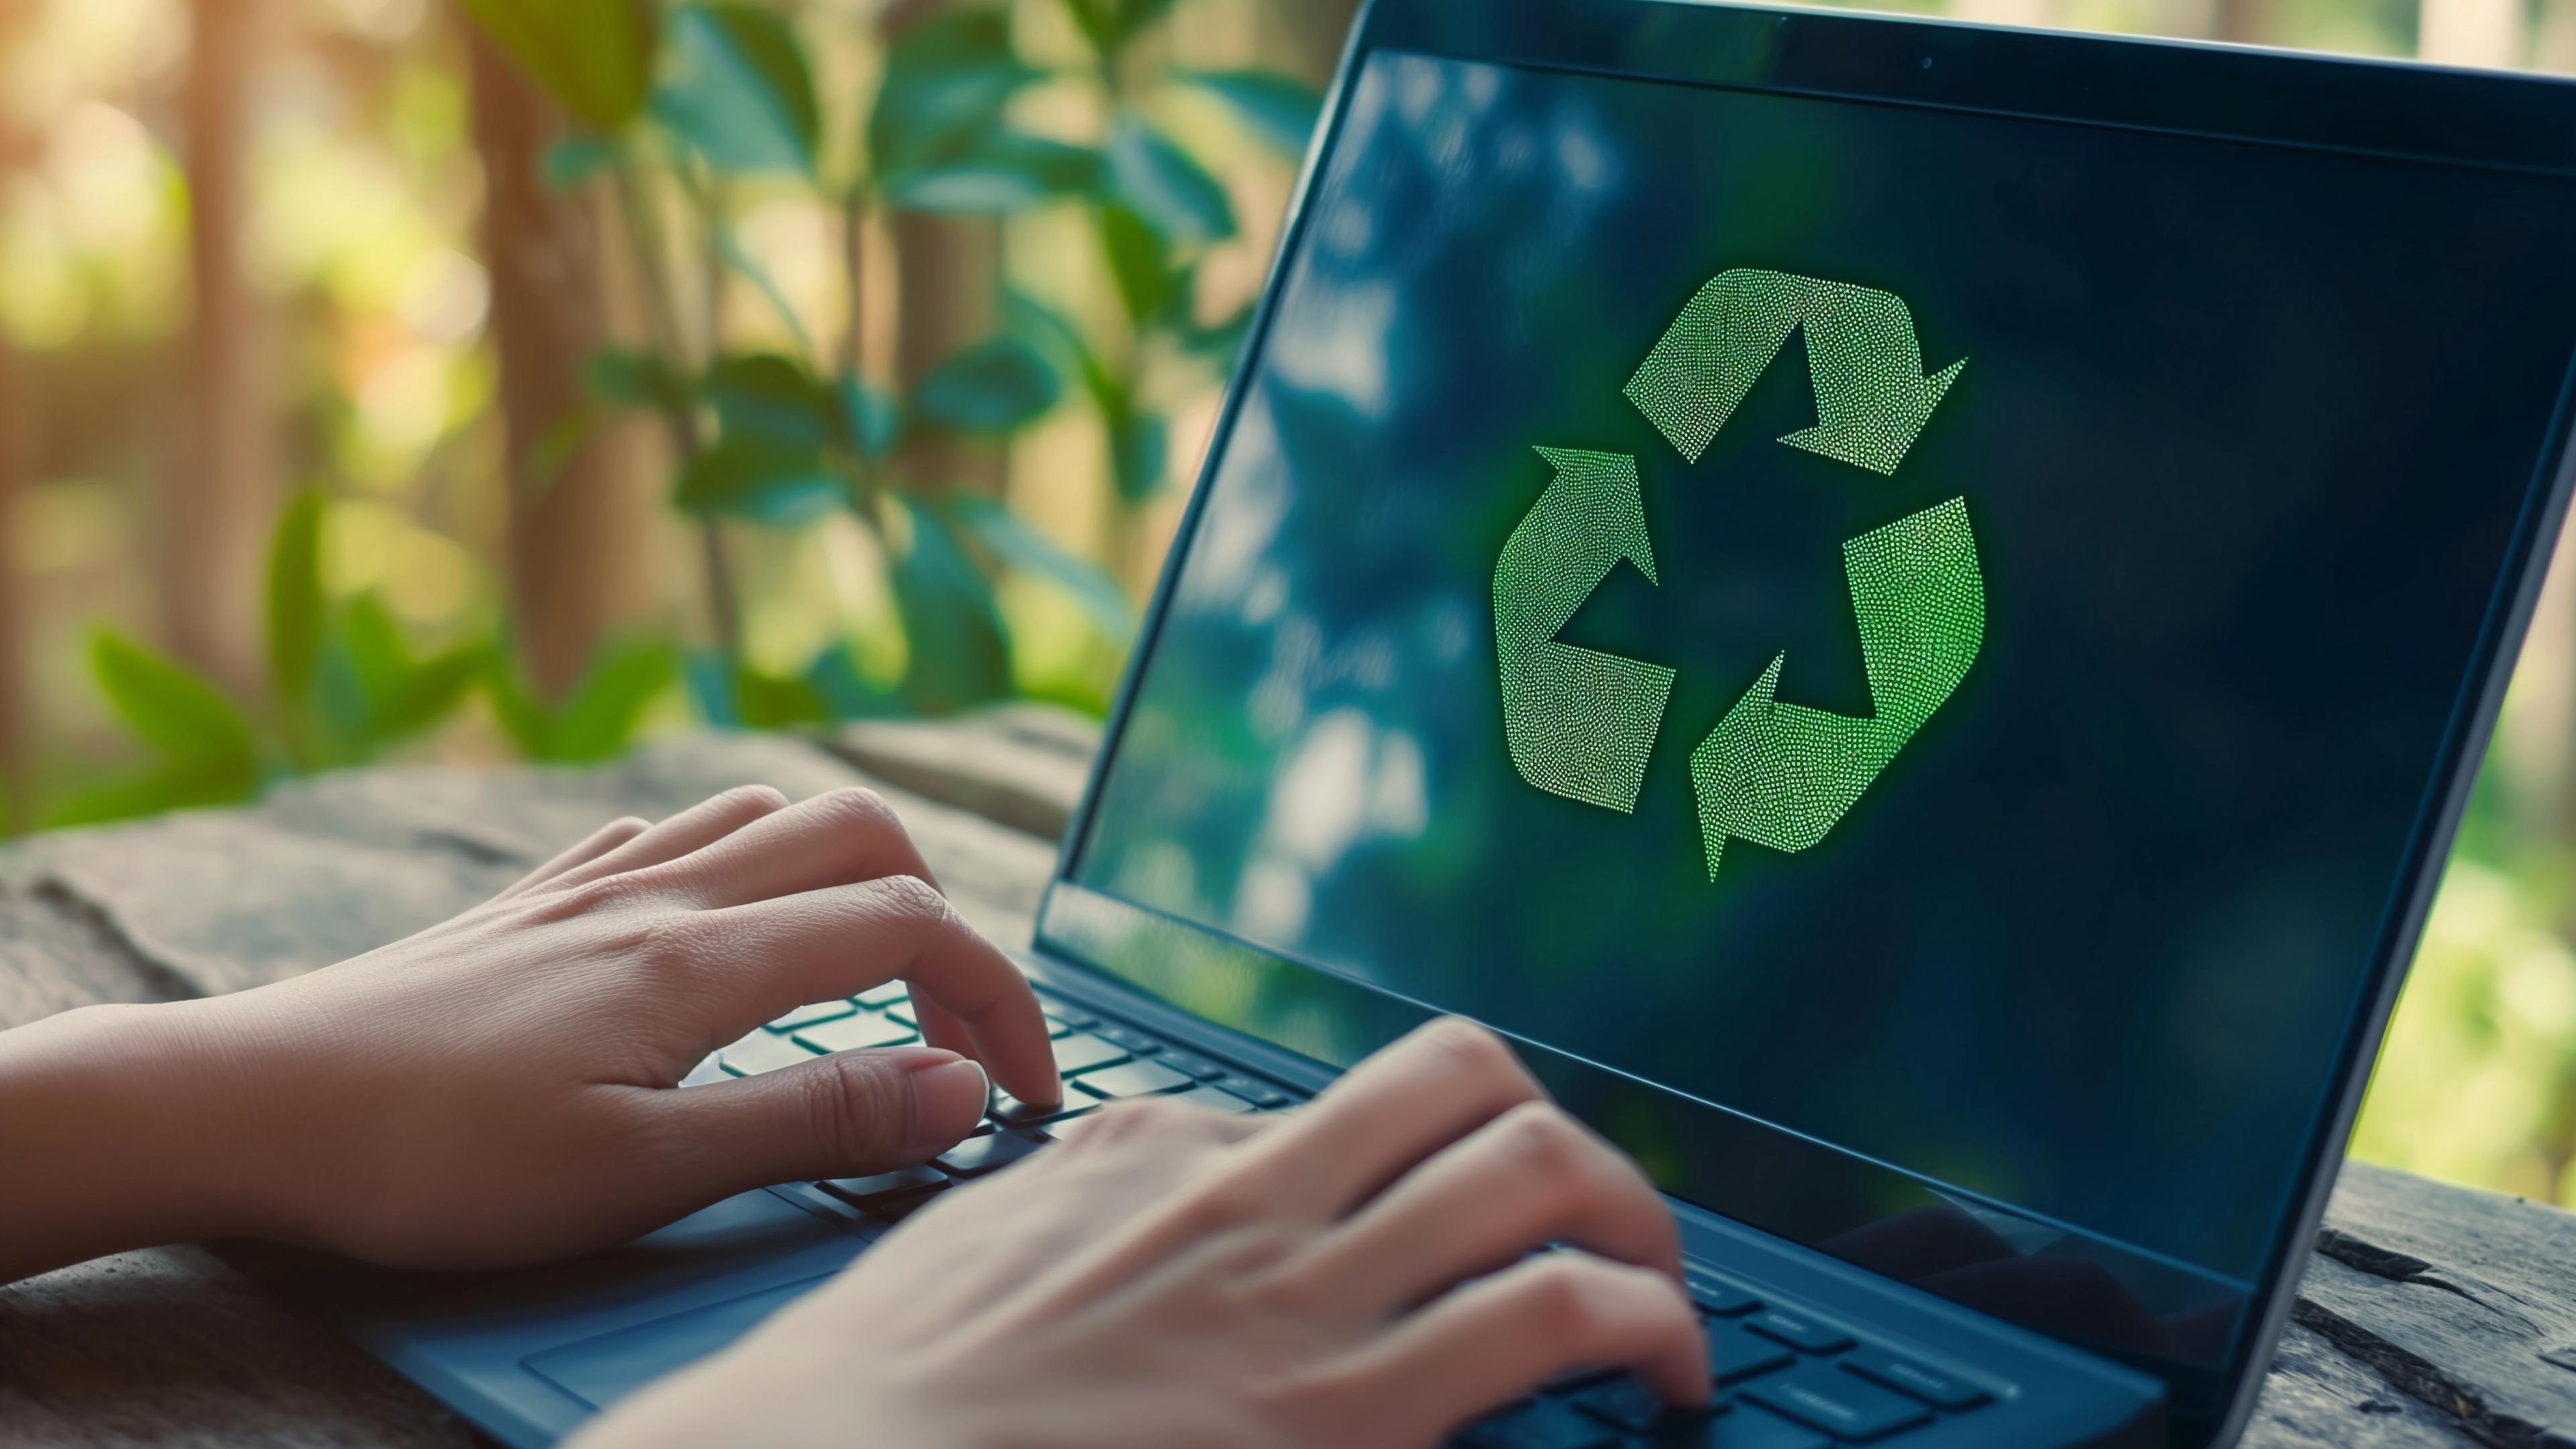 Aufgeklappter Laptop mit Recycling-Pfeile-Symbol in grün, zwei tippende Hände, im Hintergrund Pflanzen